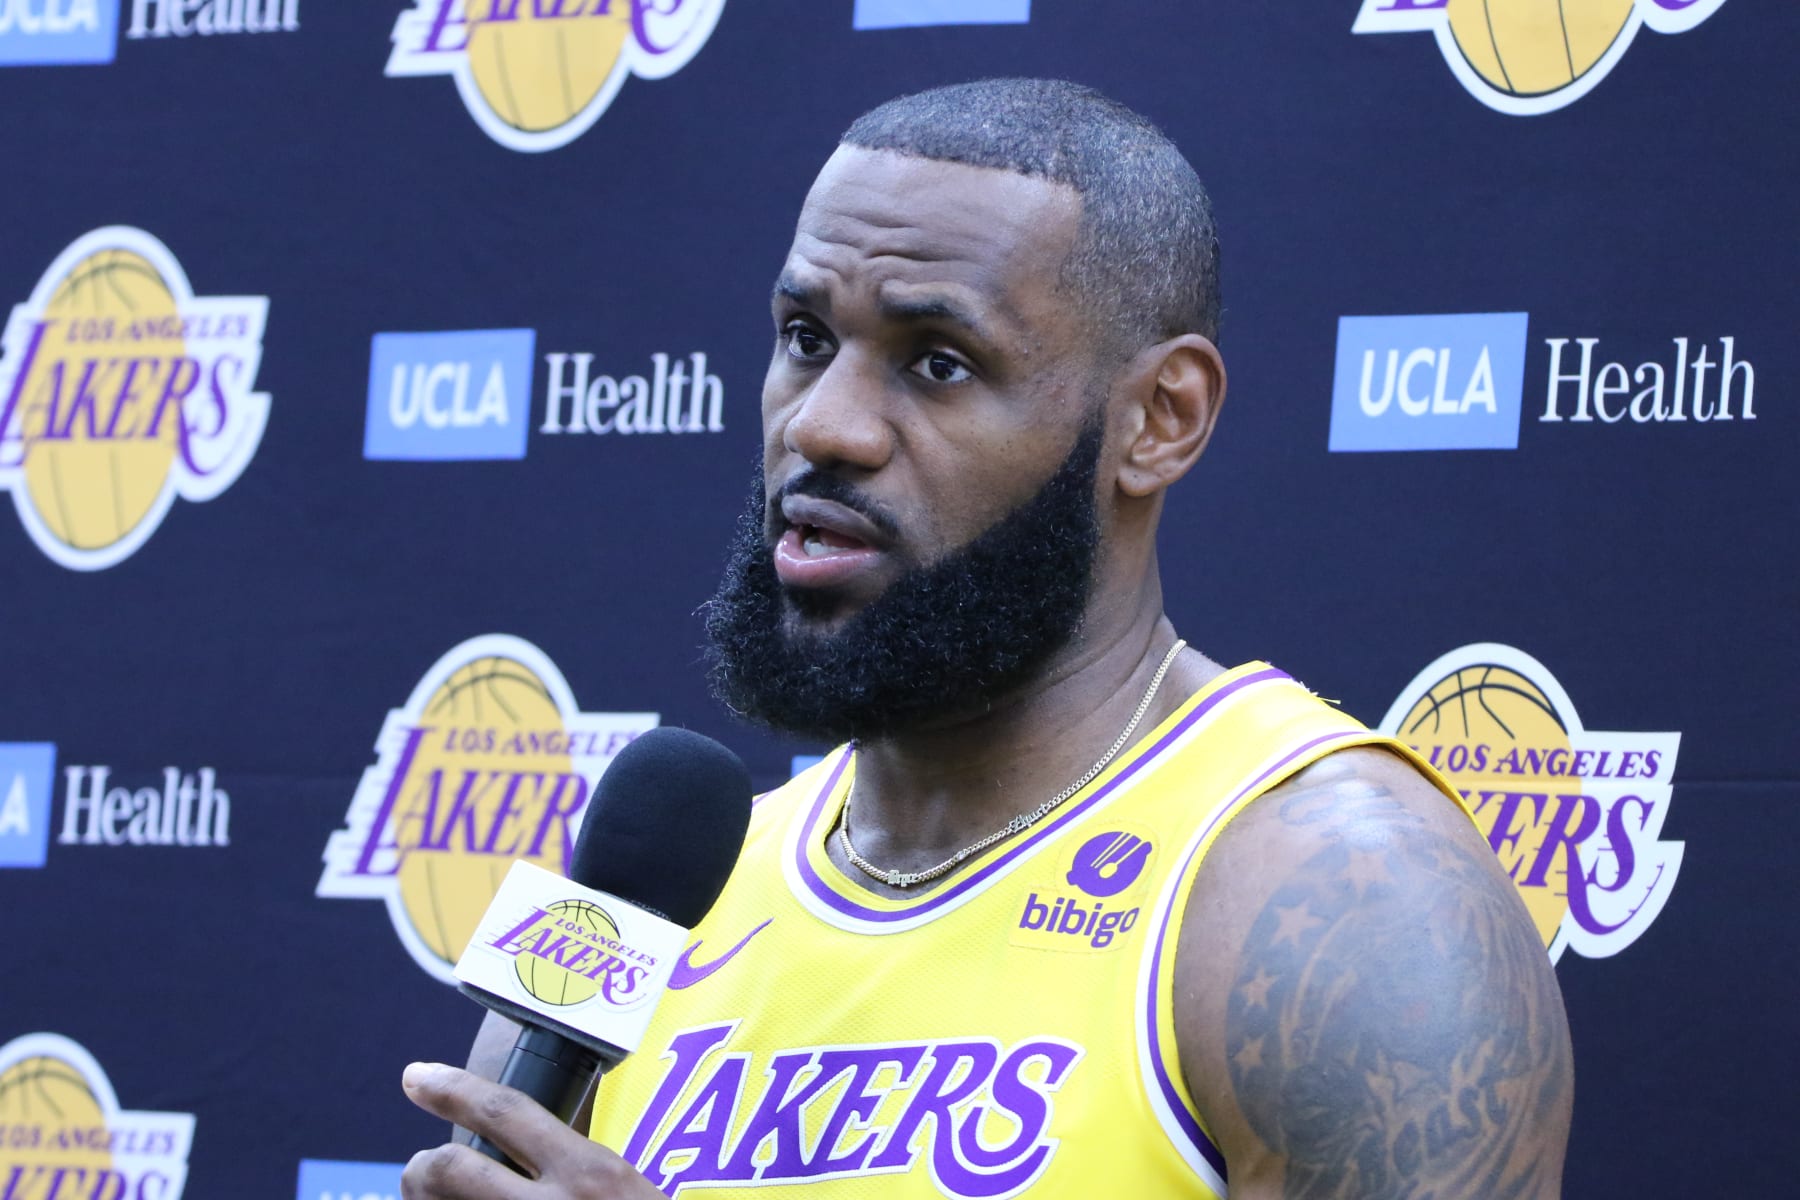 LeBron James Won't Play in Lakers' Preseason Opener vs. Warriors